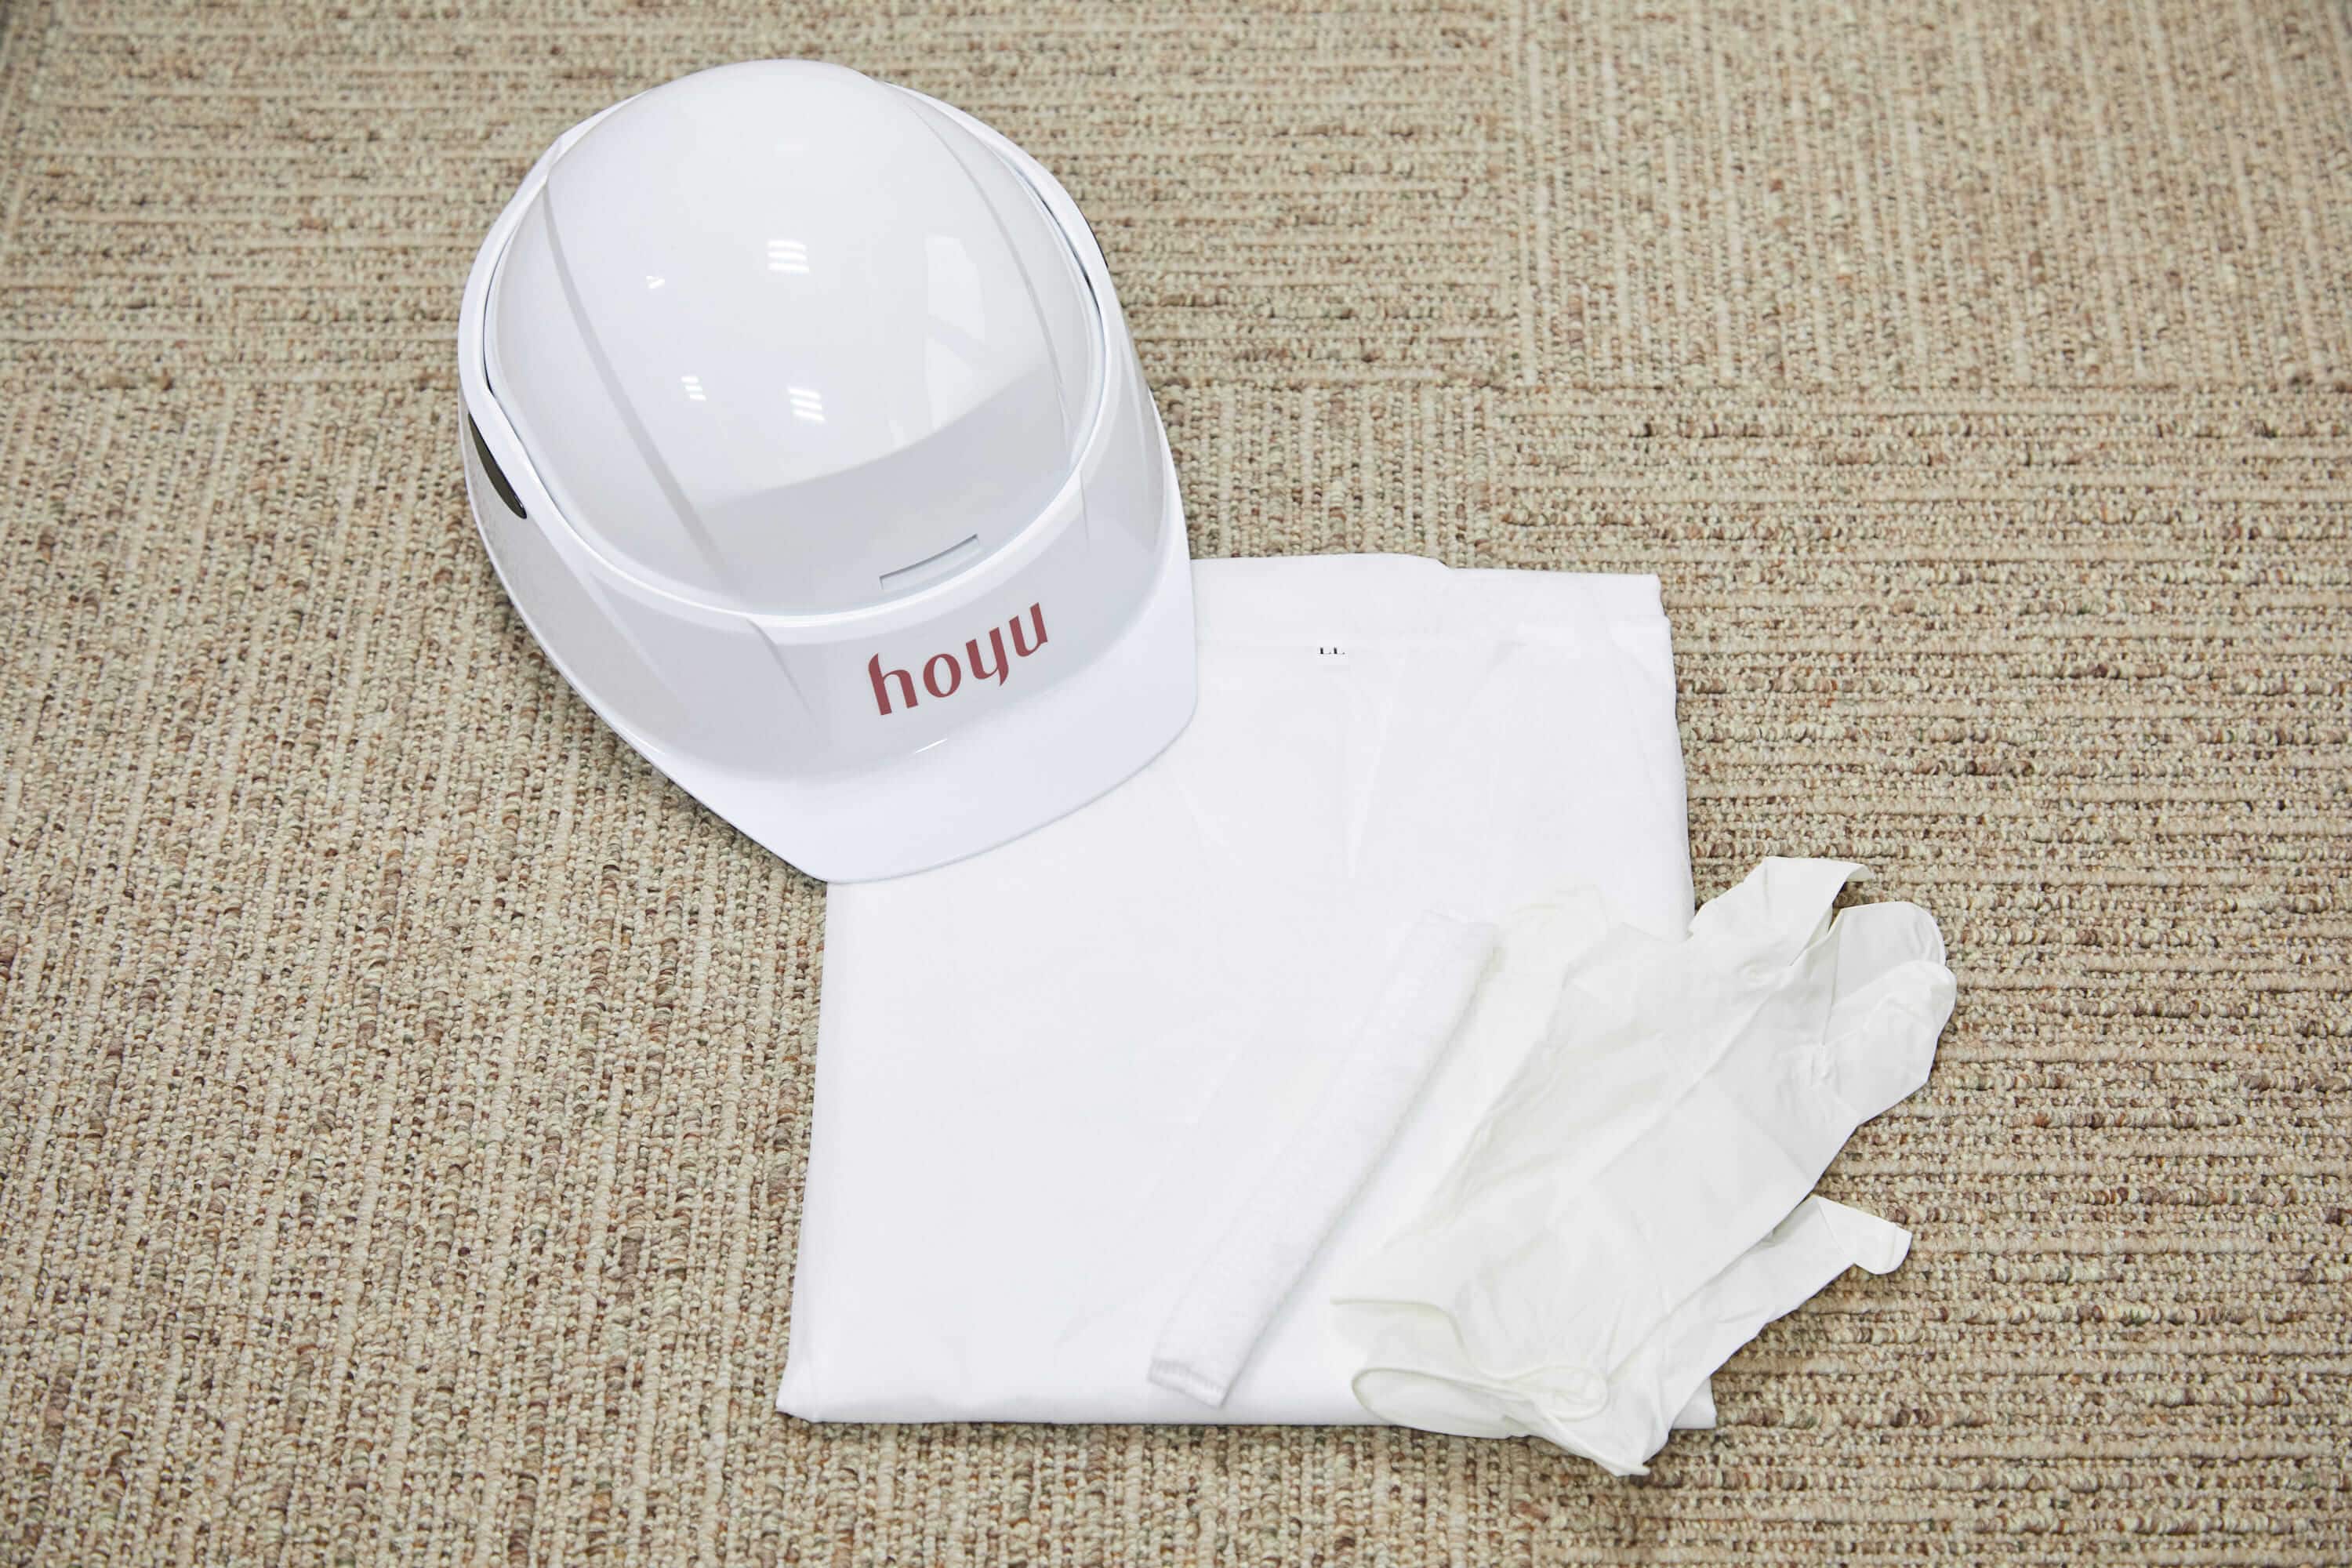 工場指定の白衣、手袋、ヘルメット